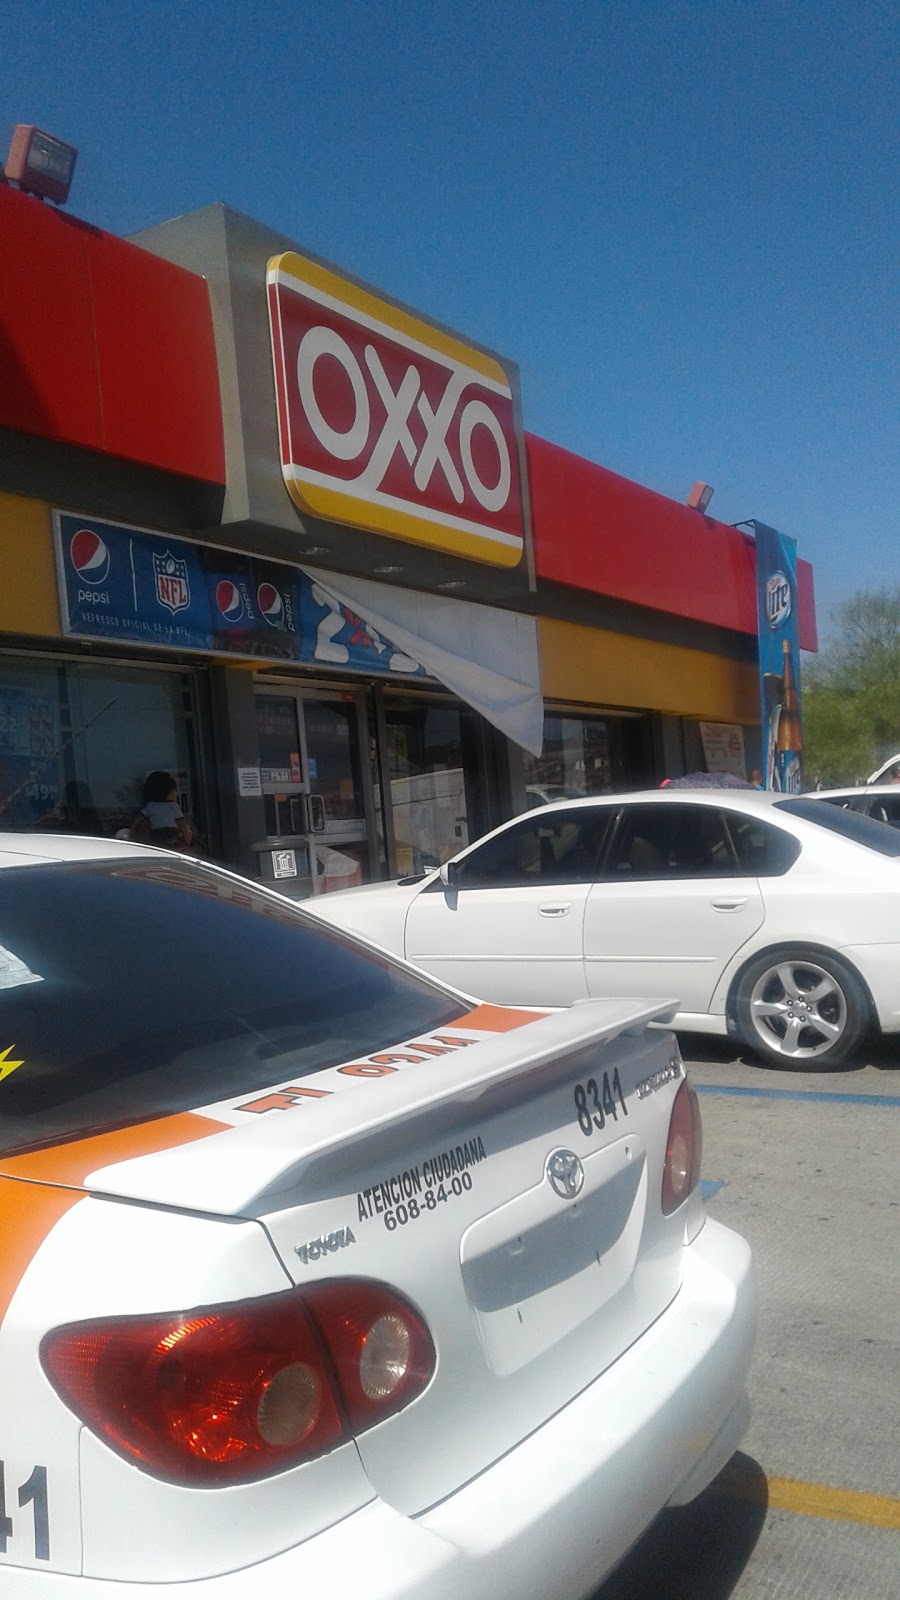 OXXO | Circuito, De los Robles 23511-0, Paseos del Vergel, El Refugio, 22253 Tijuana, B.C., Mexico | Phone: 81 8320 2020